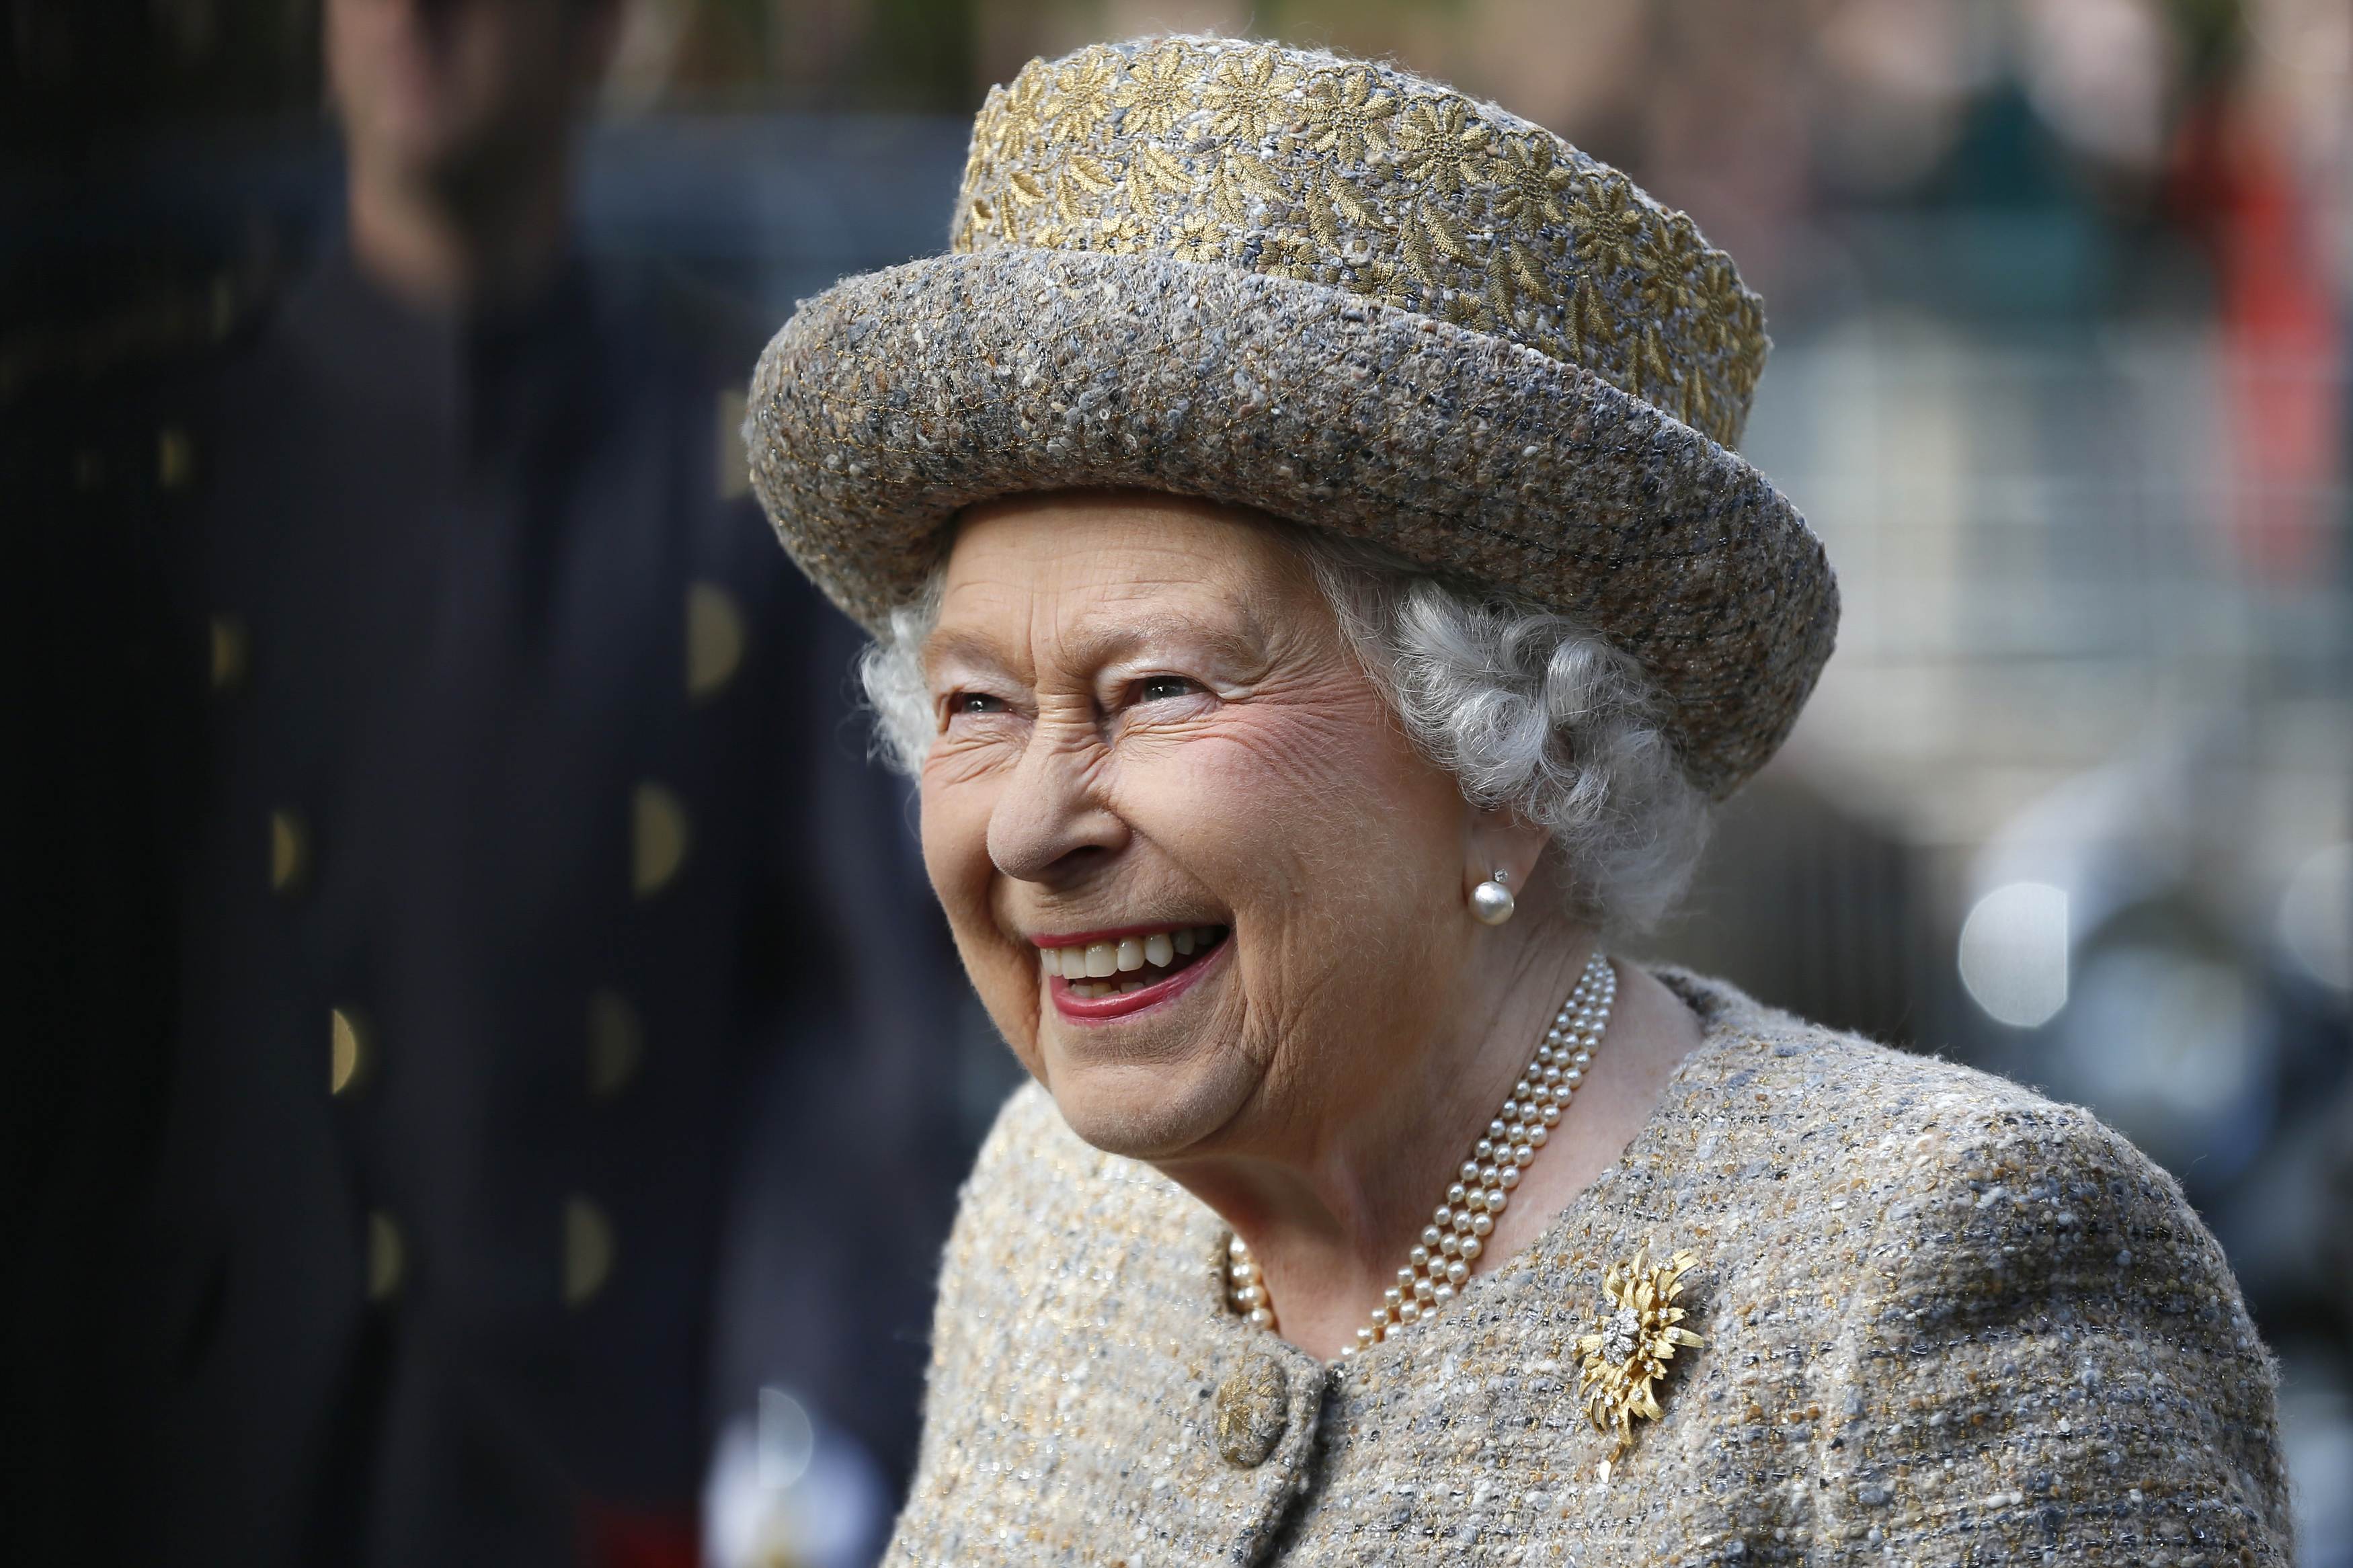 Königin Elizabeth II. lächelt, als sie vor der Eröffnung des Flanders' Fields Memorial Garden in der Wellington Barracks am 6. November 2014 in London, England, ankommt. | Quelle: Getty Images